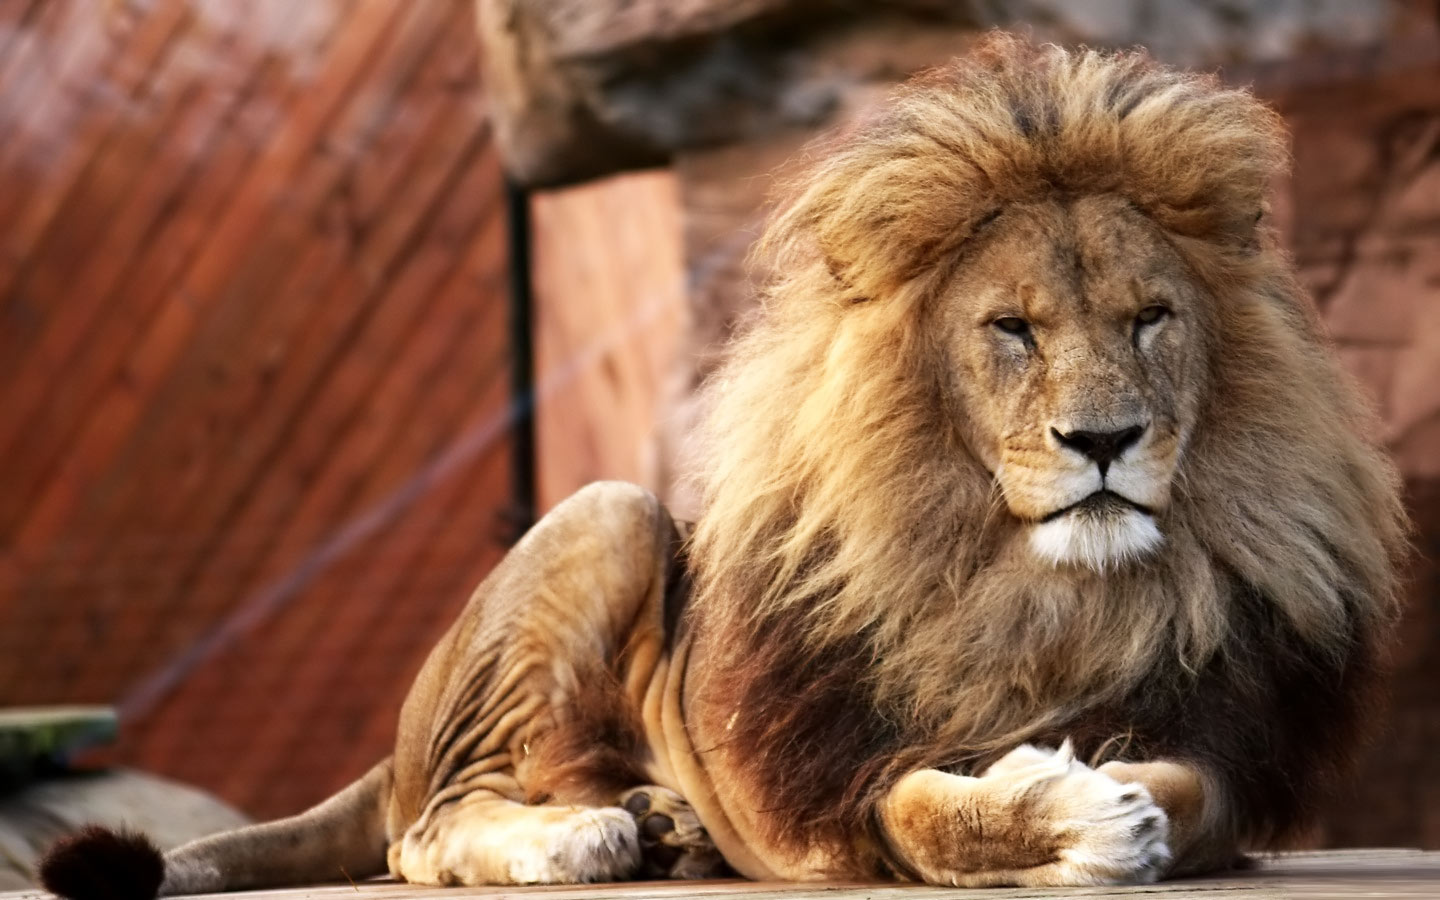 lions - Lions Photo (36609573) - Fanpop